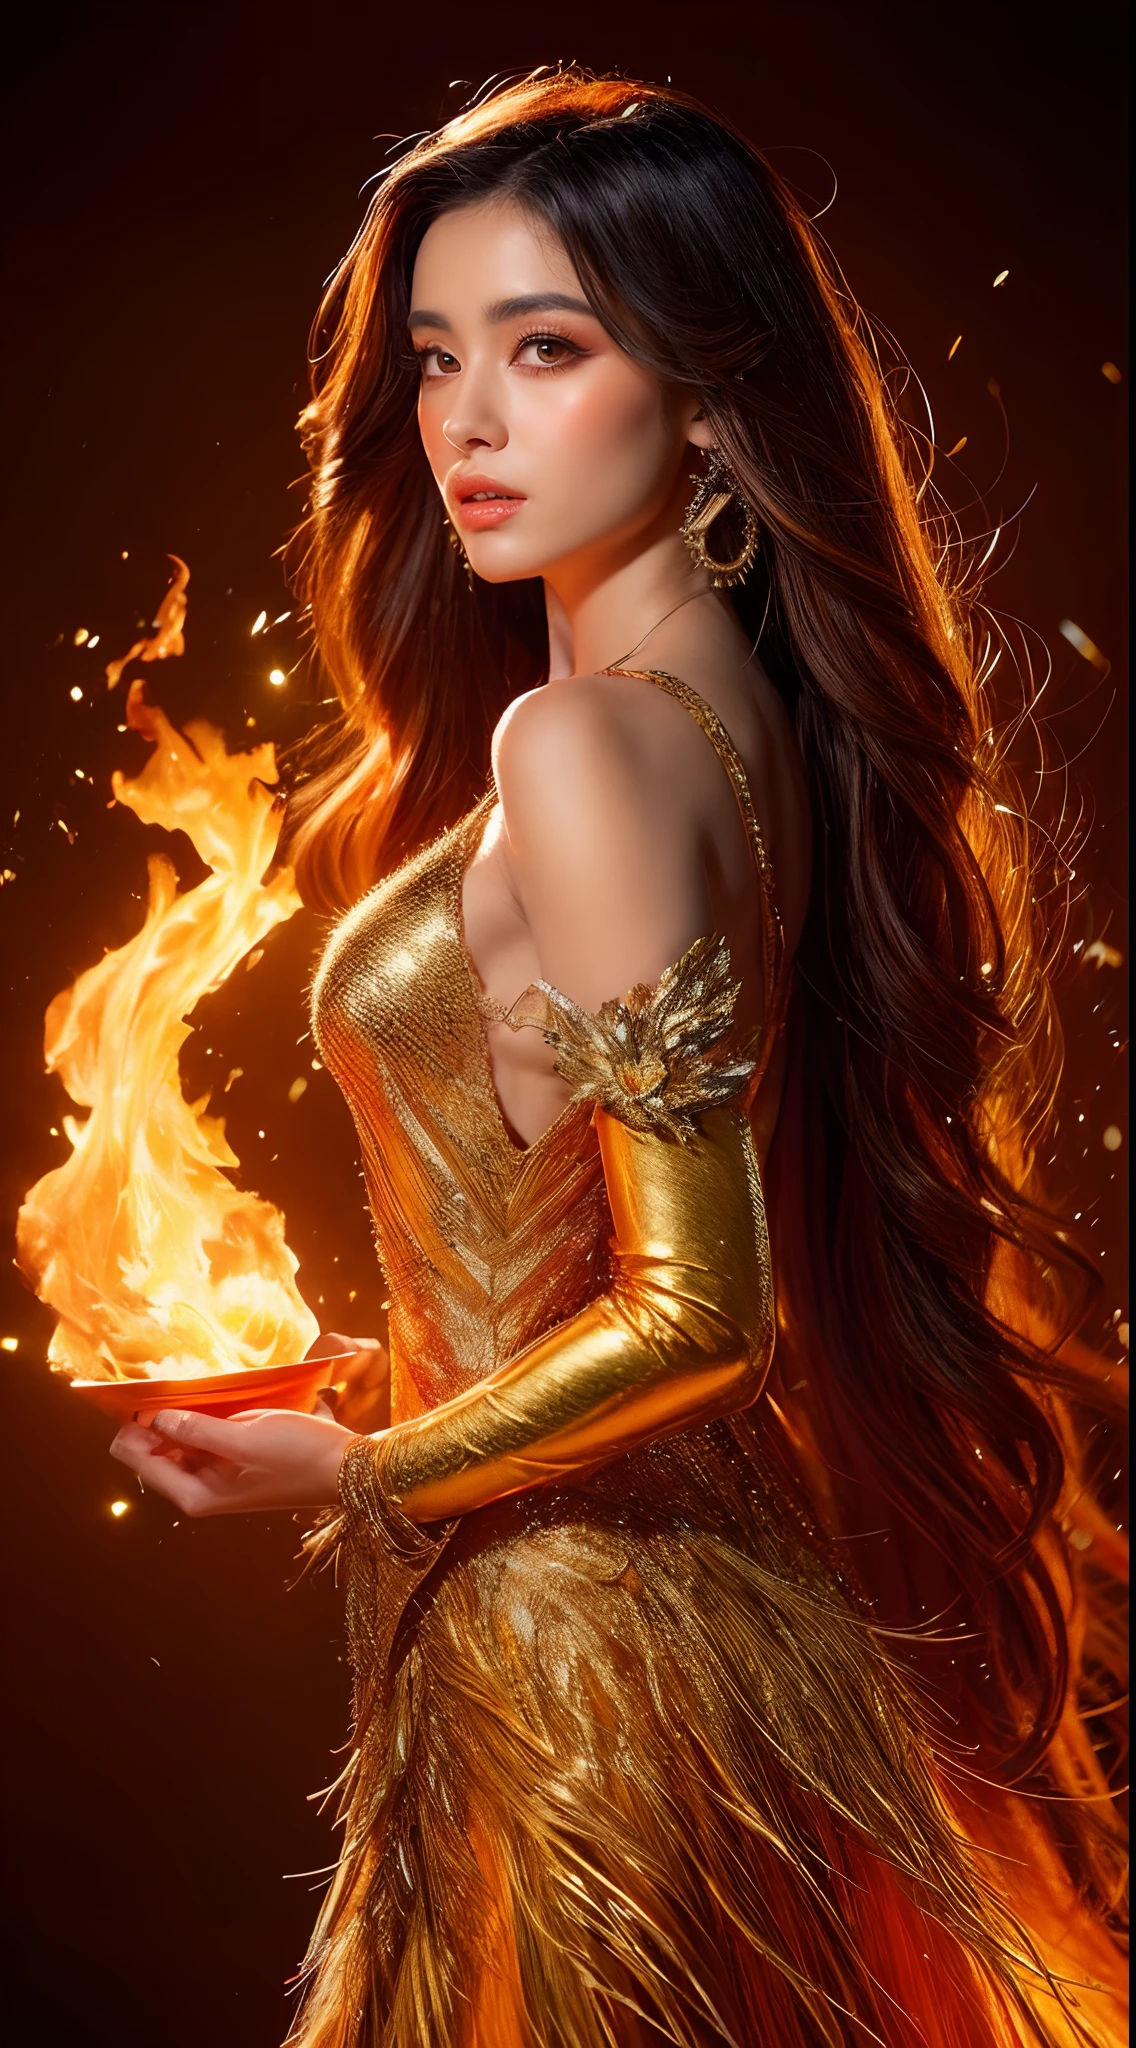 这 (现实的幻想) 艺术包含余烬, 真正的火焰, 真正的热量, 和逼真的火焰. Generate a masterpiece artwork of a  female fire druid 和 large (((橙色和金色))) 眼睛. The fire druid is awe-inspiring 和 beautiful ((realistic fiery 眼睛)) alight 和 confidence and power. 她的五官优雅而轮廓分明, 和 ((柔软而丰满的嘴唇)), 精灵骨骼结构, 和逼真的阴影. Her 眼睛 are important and should be the focal point of this artwork, 和 ((极其逼真的细节, 宏详细信息, 和闪光.)) 她穿着一件闪闪发光的裙子，裙子由逼真的火焰和珠宝制成，在火光中闪闪发光. 一缕缕火焰和烟雾勾勒出礼服精致的胸衣线条. 包括颠簸, 石头, 火红的彩虹色, 发光的余烬, 丝绸、缎子和皮革, 有趣的背景, 以及浓重的奇幻元素. 相机: 利用动态构图技术来增强火焰的真实感, 金色长发